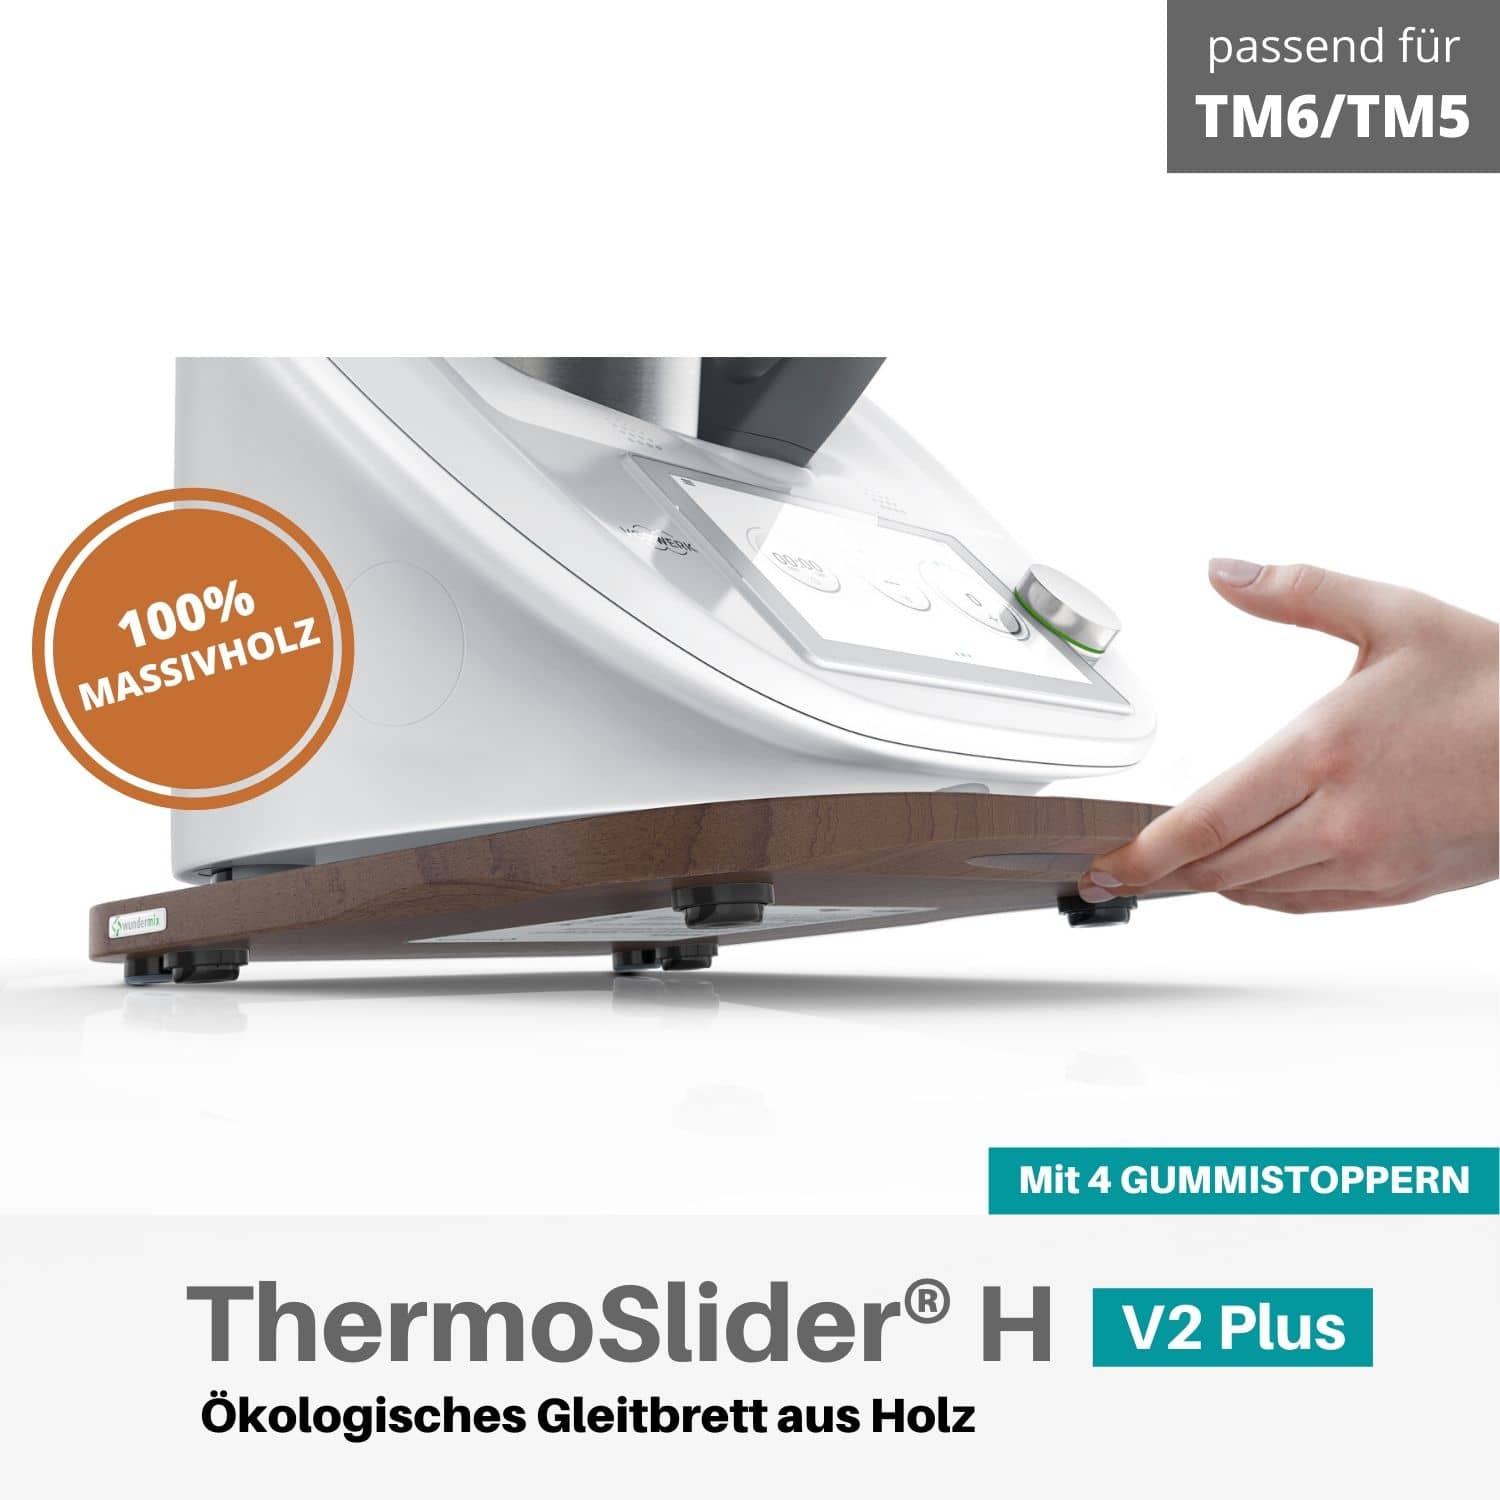 Thermoslider® H V2 Plus Buche Gleitbrett für den Thermomix TM6, TM5